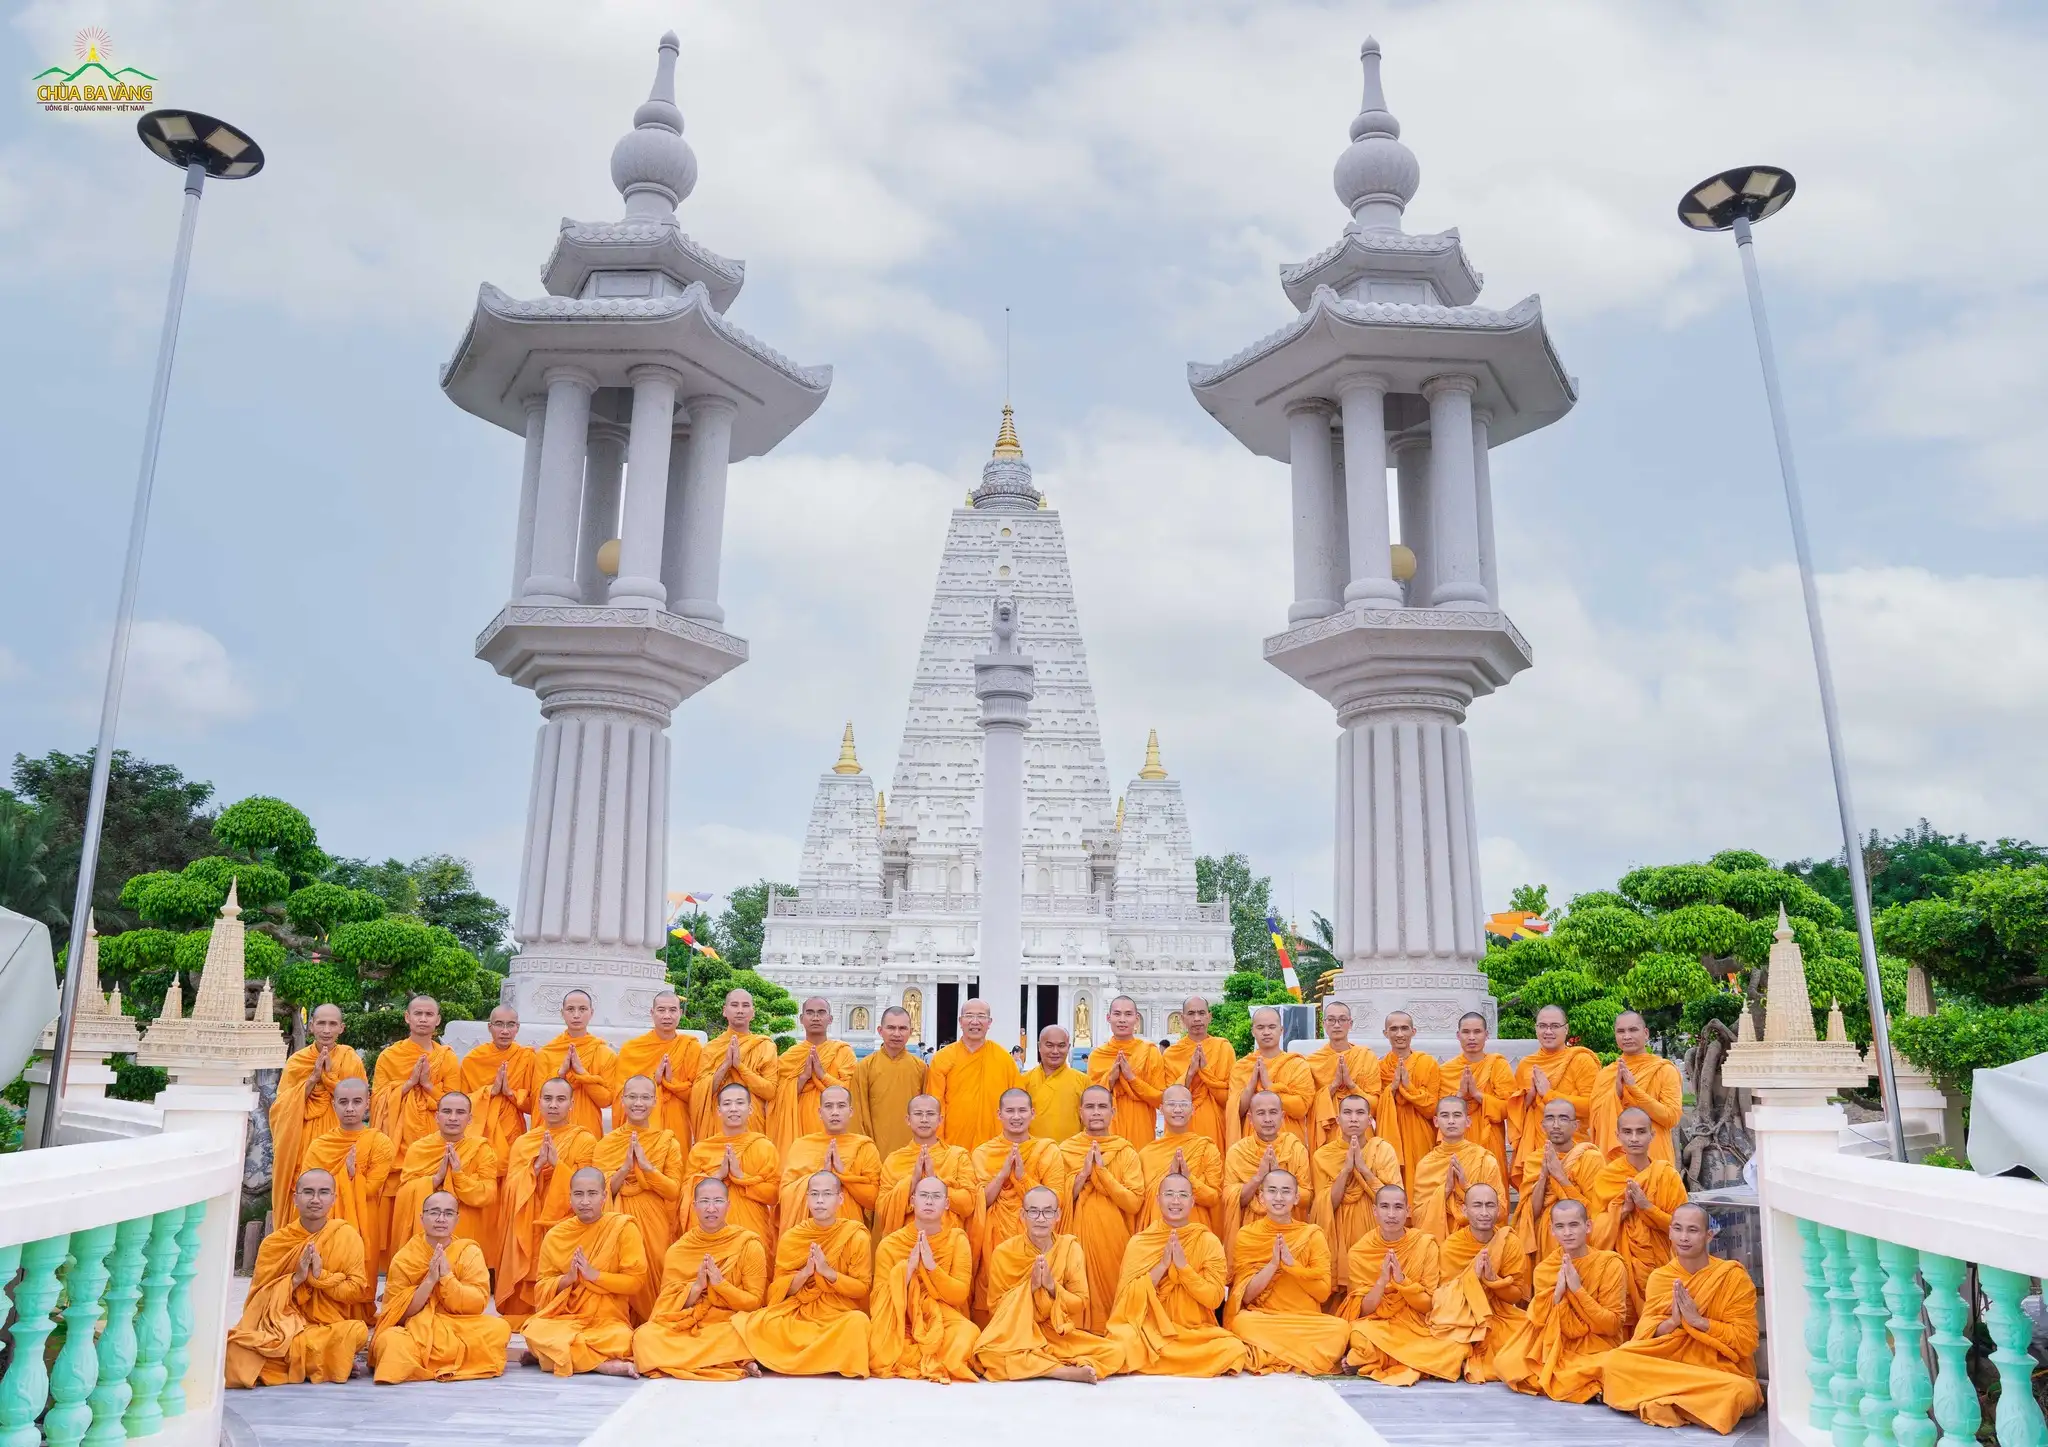 Đoàn chụp ảnh lưu niệm tại bảo tháp chính trong quần thể Tứ động tâm, Thiền viện Trúc Lâm Chánh Giác